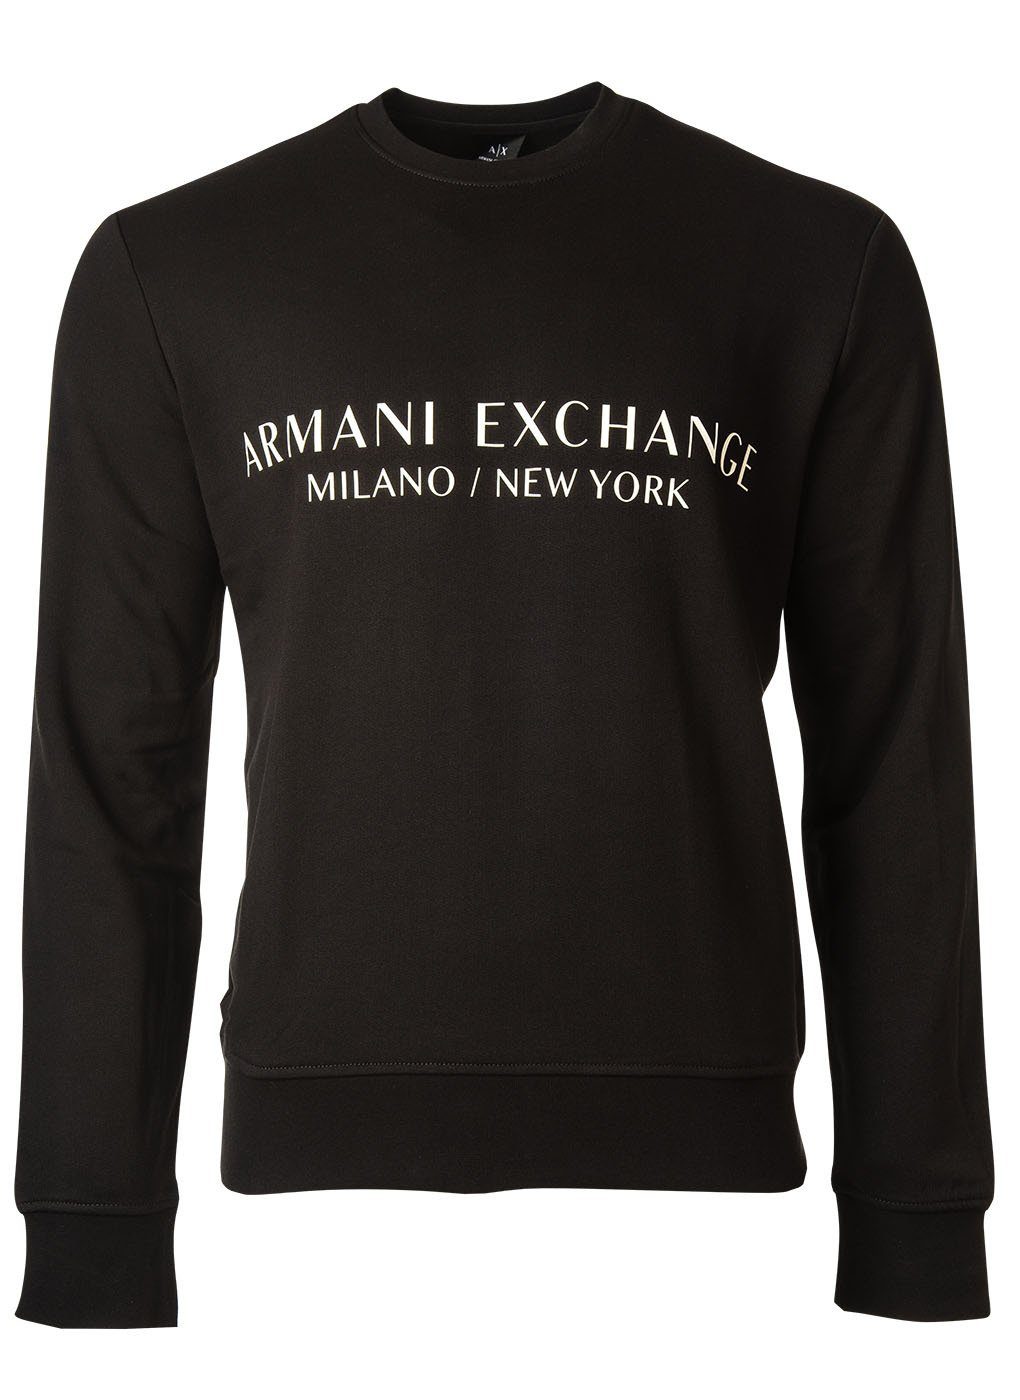 ARMANI EXCHANGE Sweatshirt Sweatshirt Pullover, Logo Herren Schwarz -